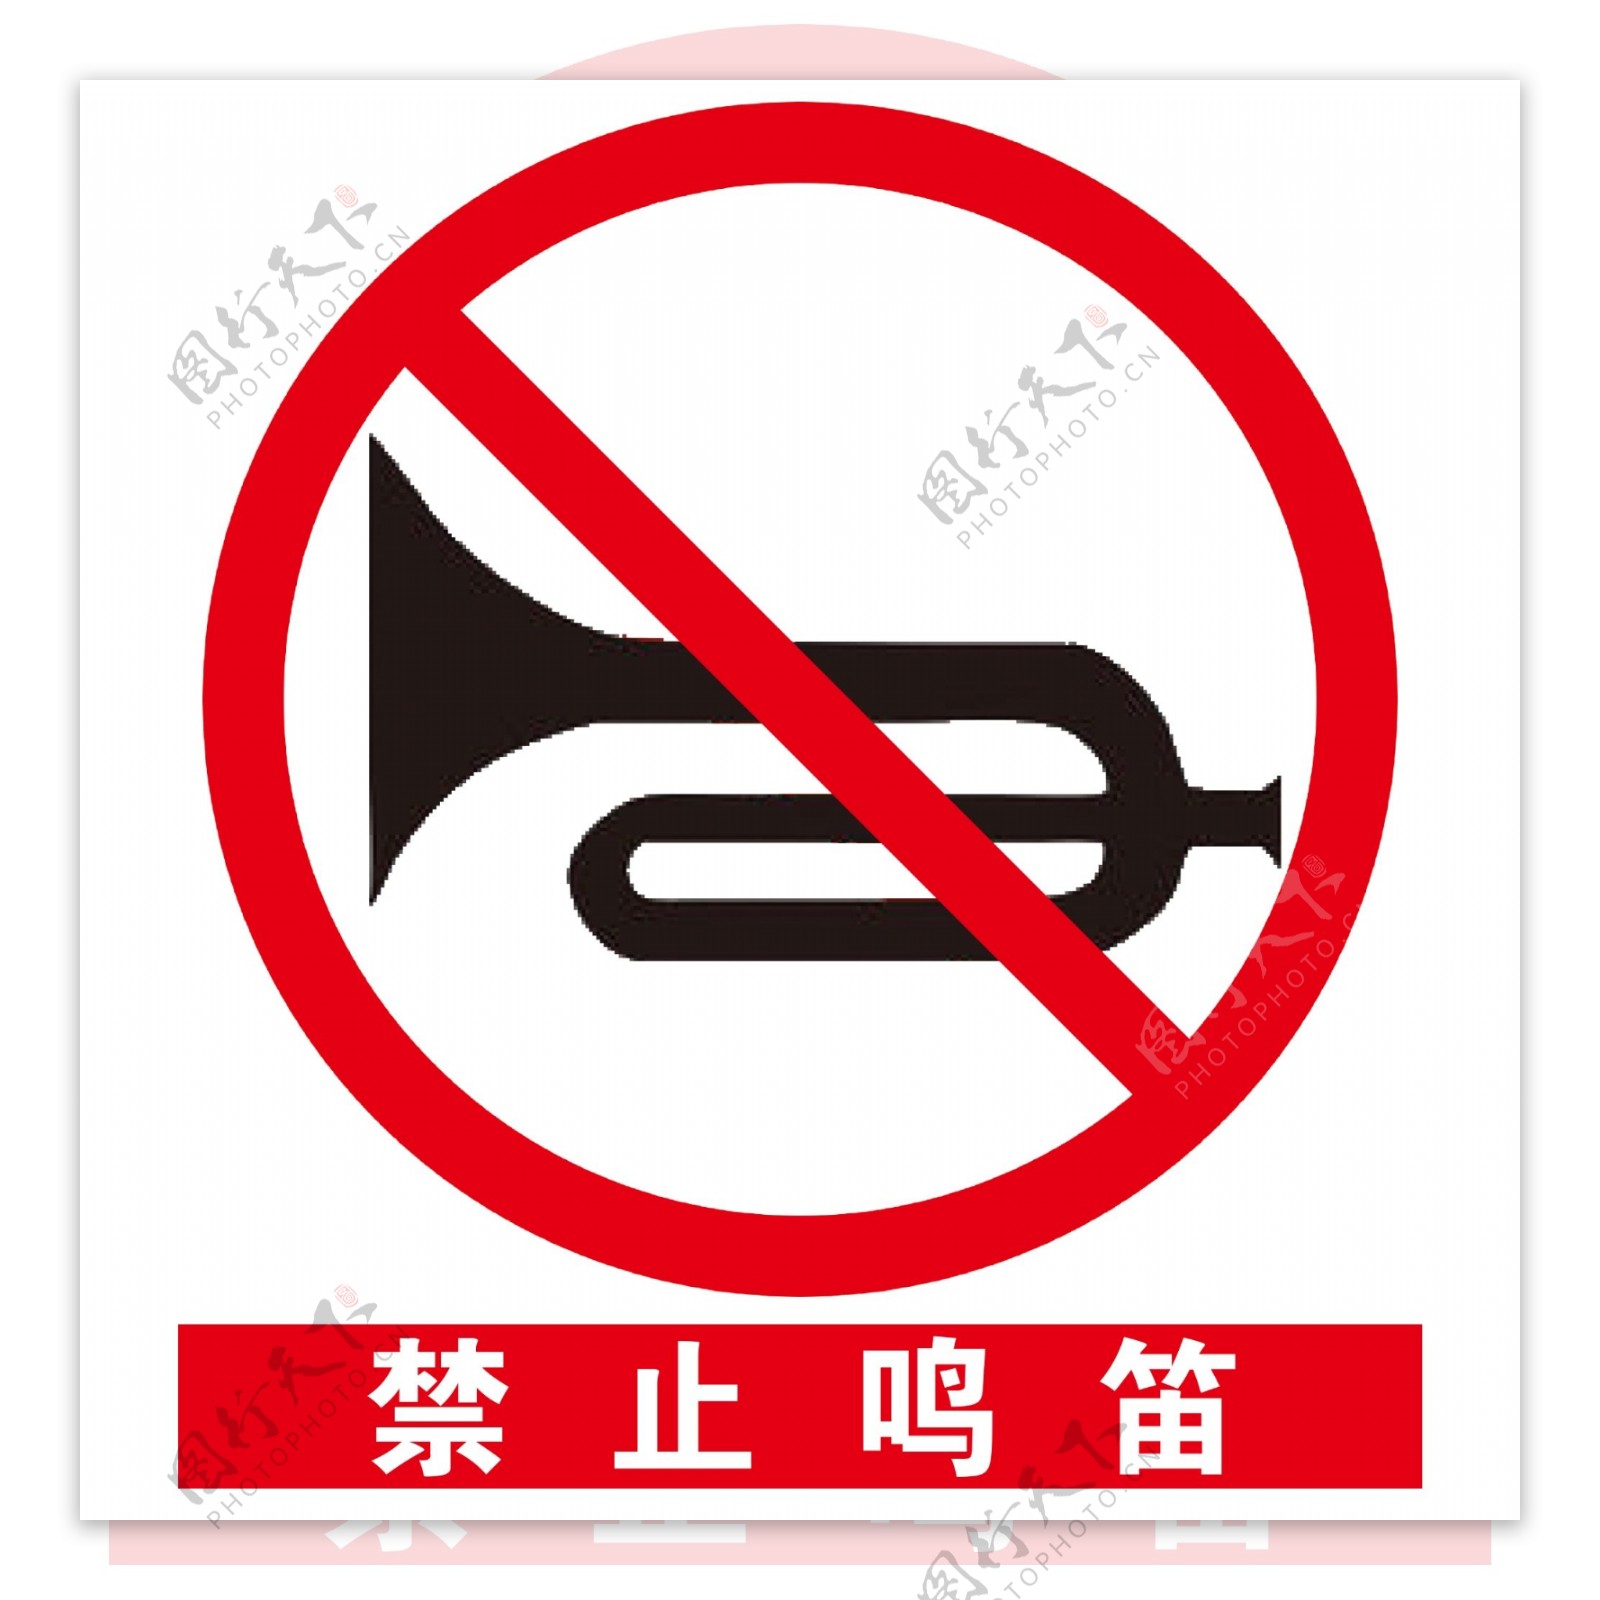 安全标示之禁止鸣笛